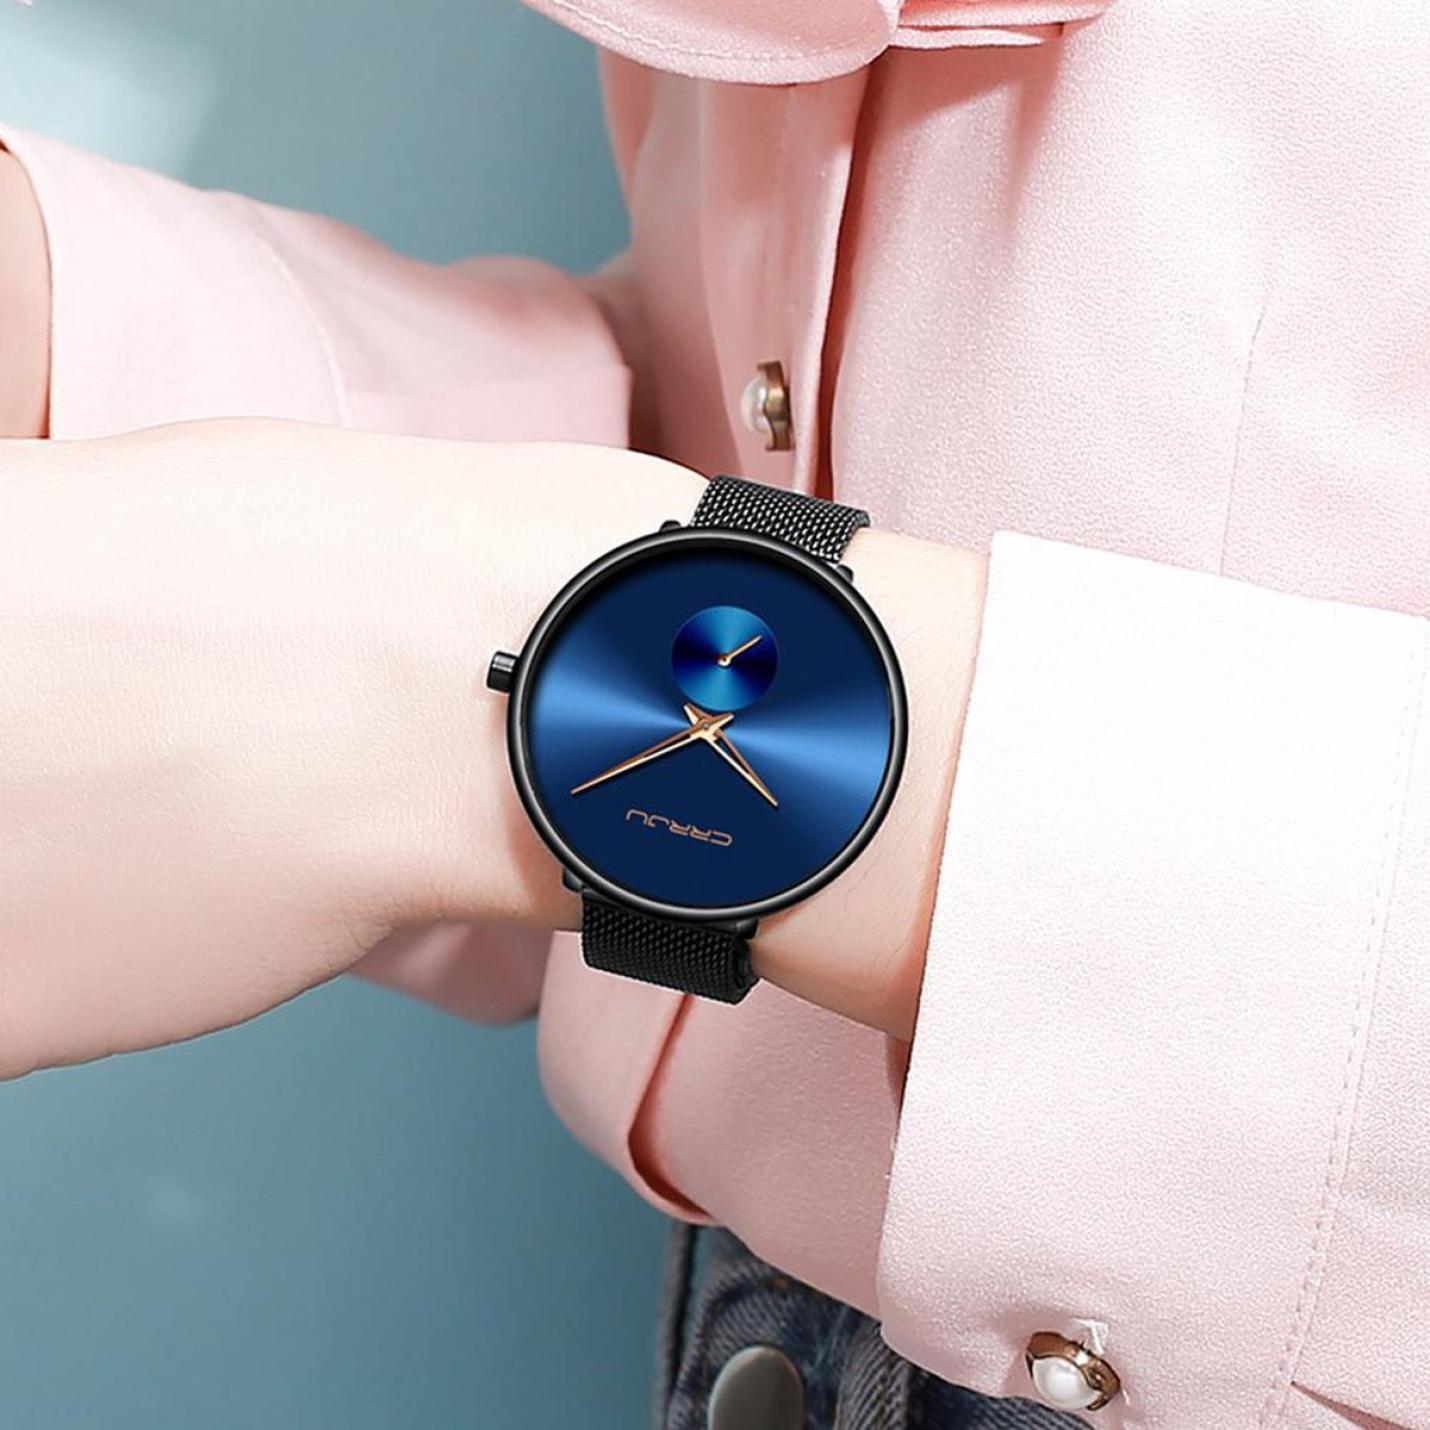 crrju-horloge-dameshorloge-zwart-blauw-staal-op-model